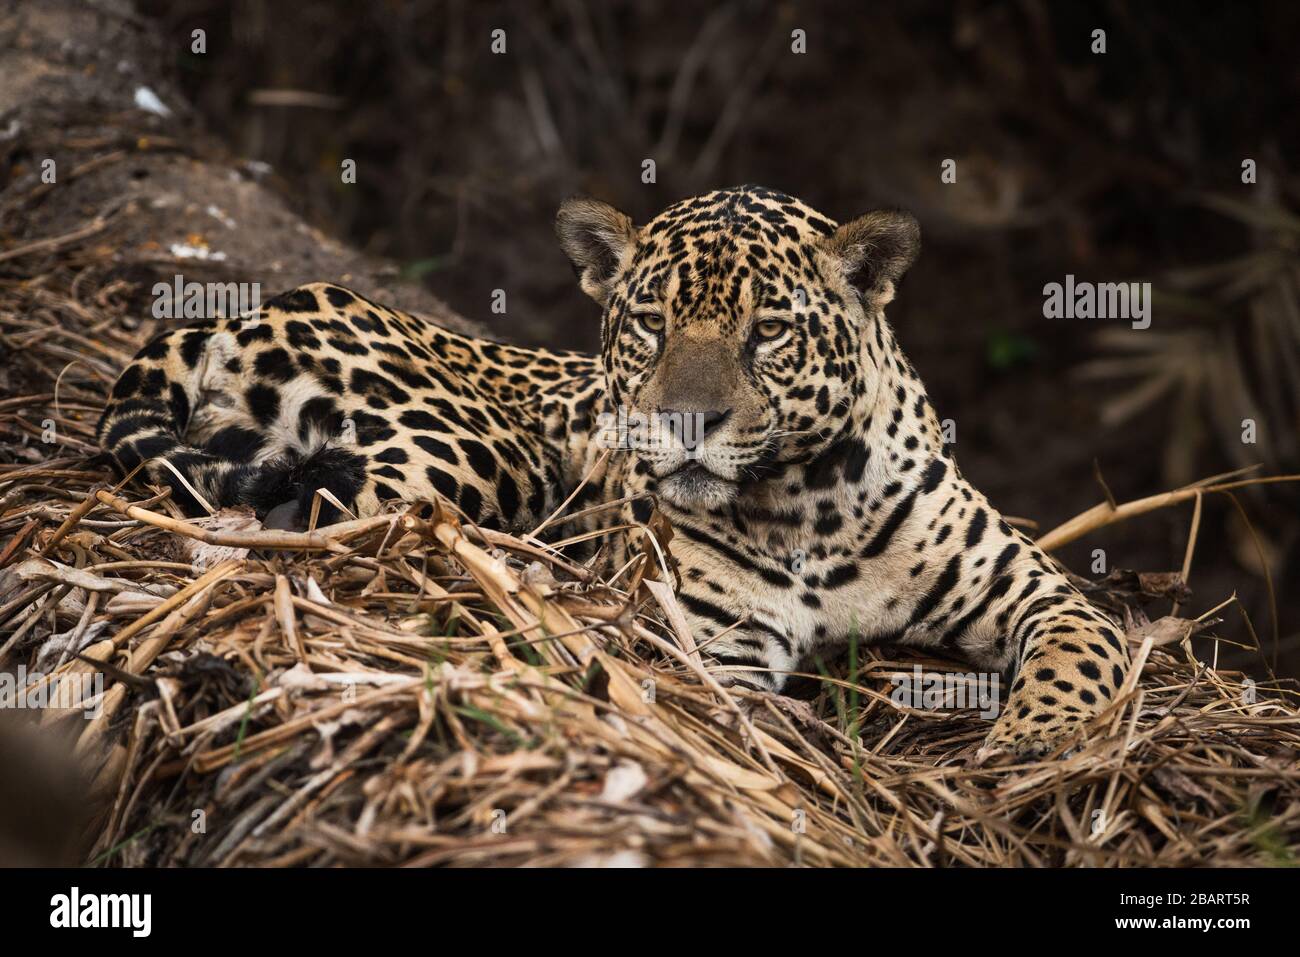 A wild Jaguar (Panthera onca) from the Pantanal of Brazil Stock Photo